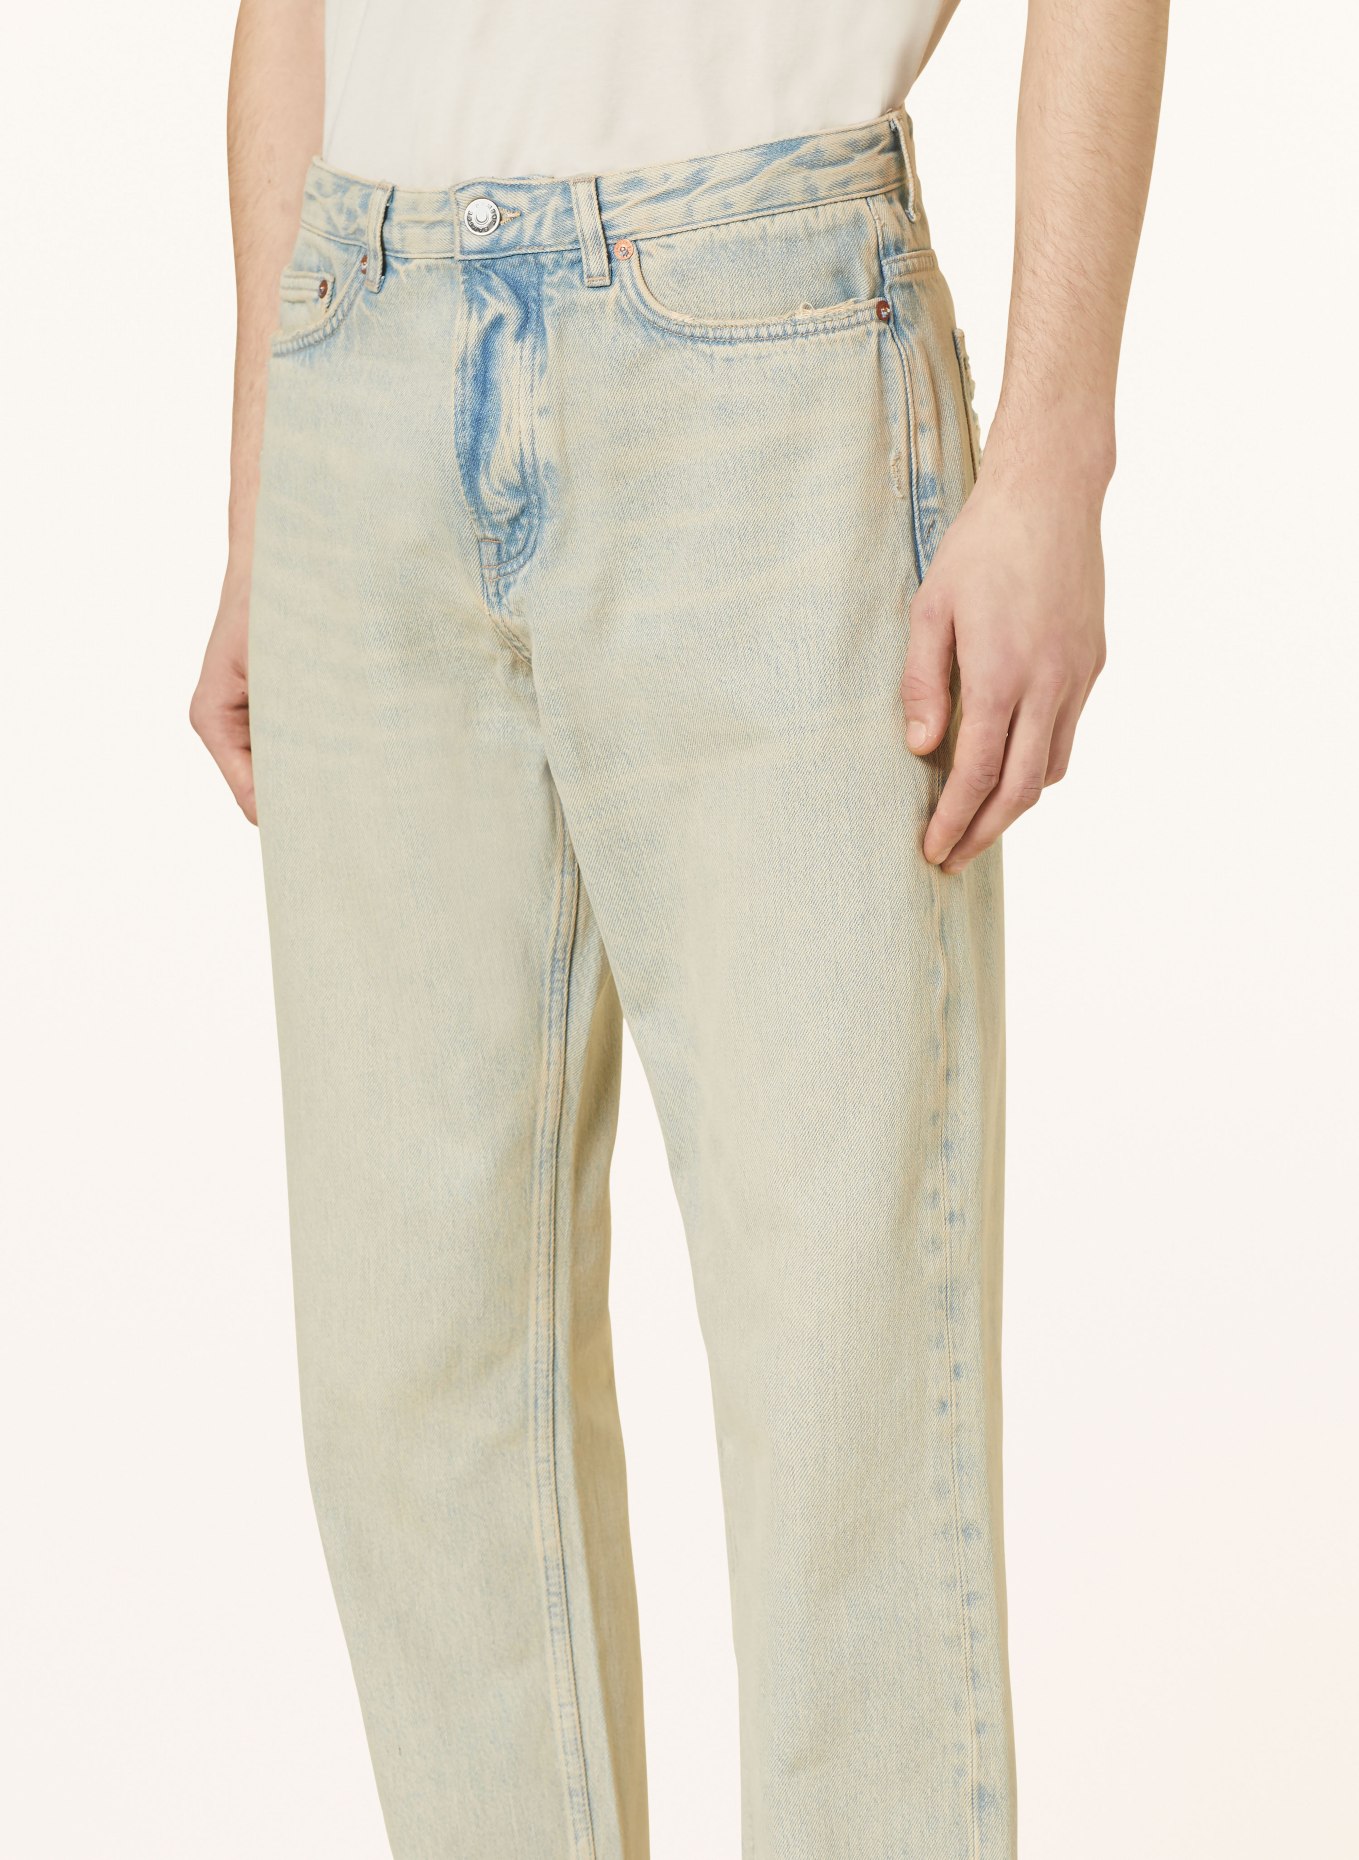 SAMSØE  SAMSØE Jeans EDDIE regular fit, Color: CLR001370 Khaki dust (Image 5)